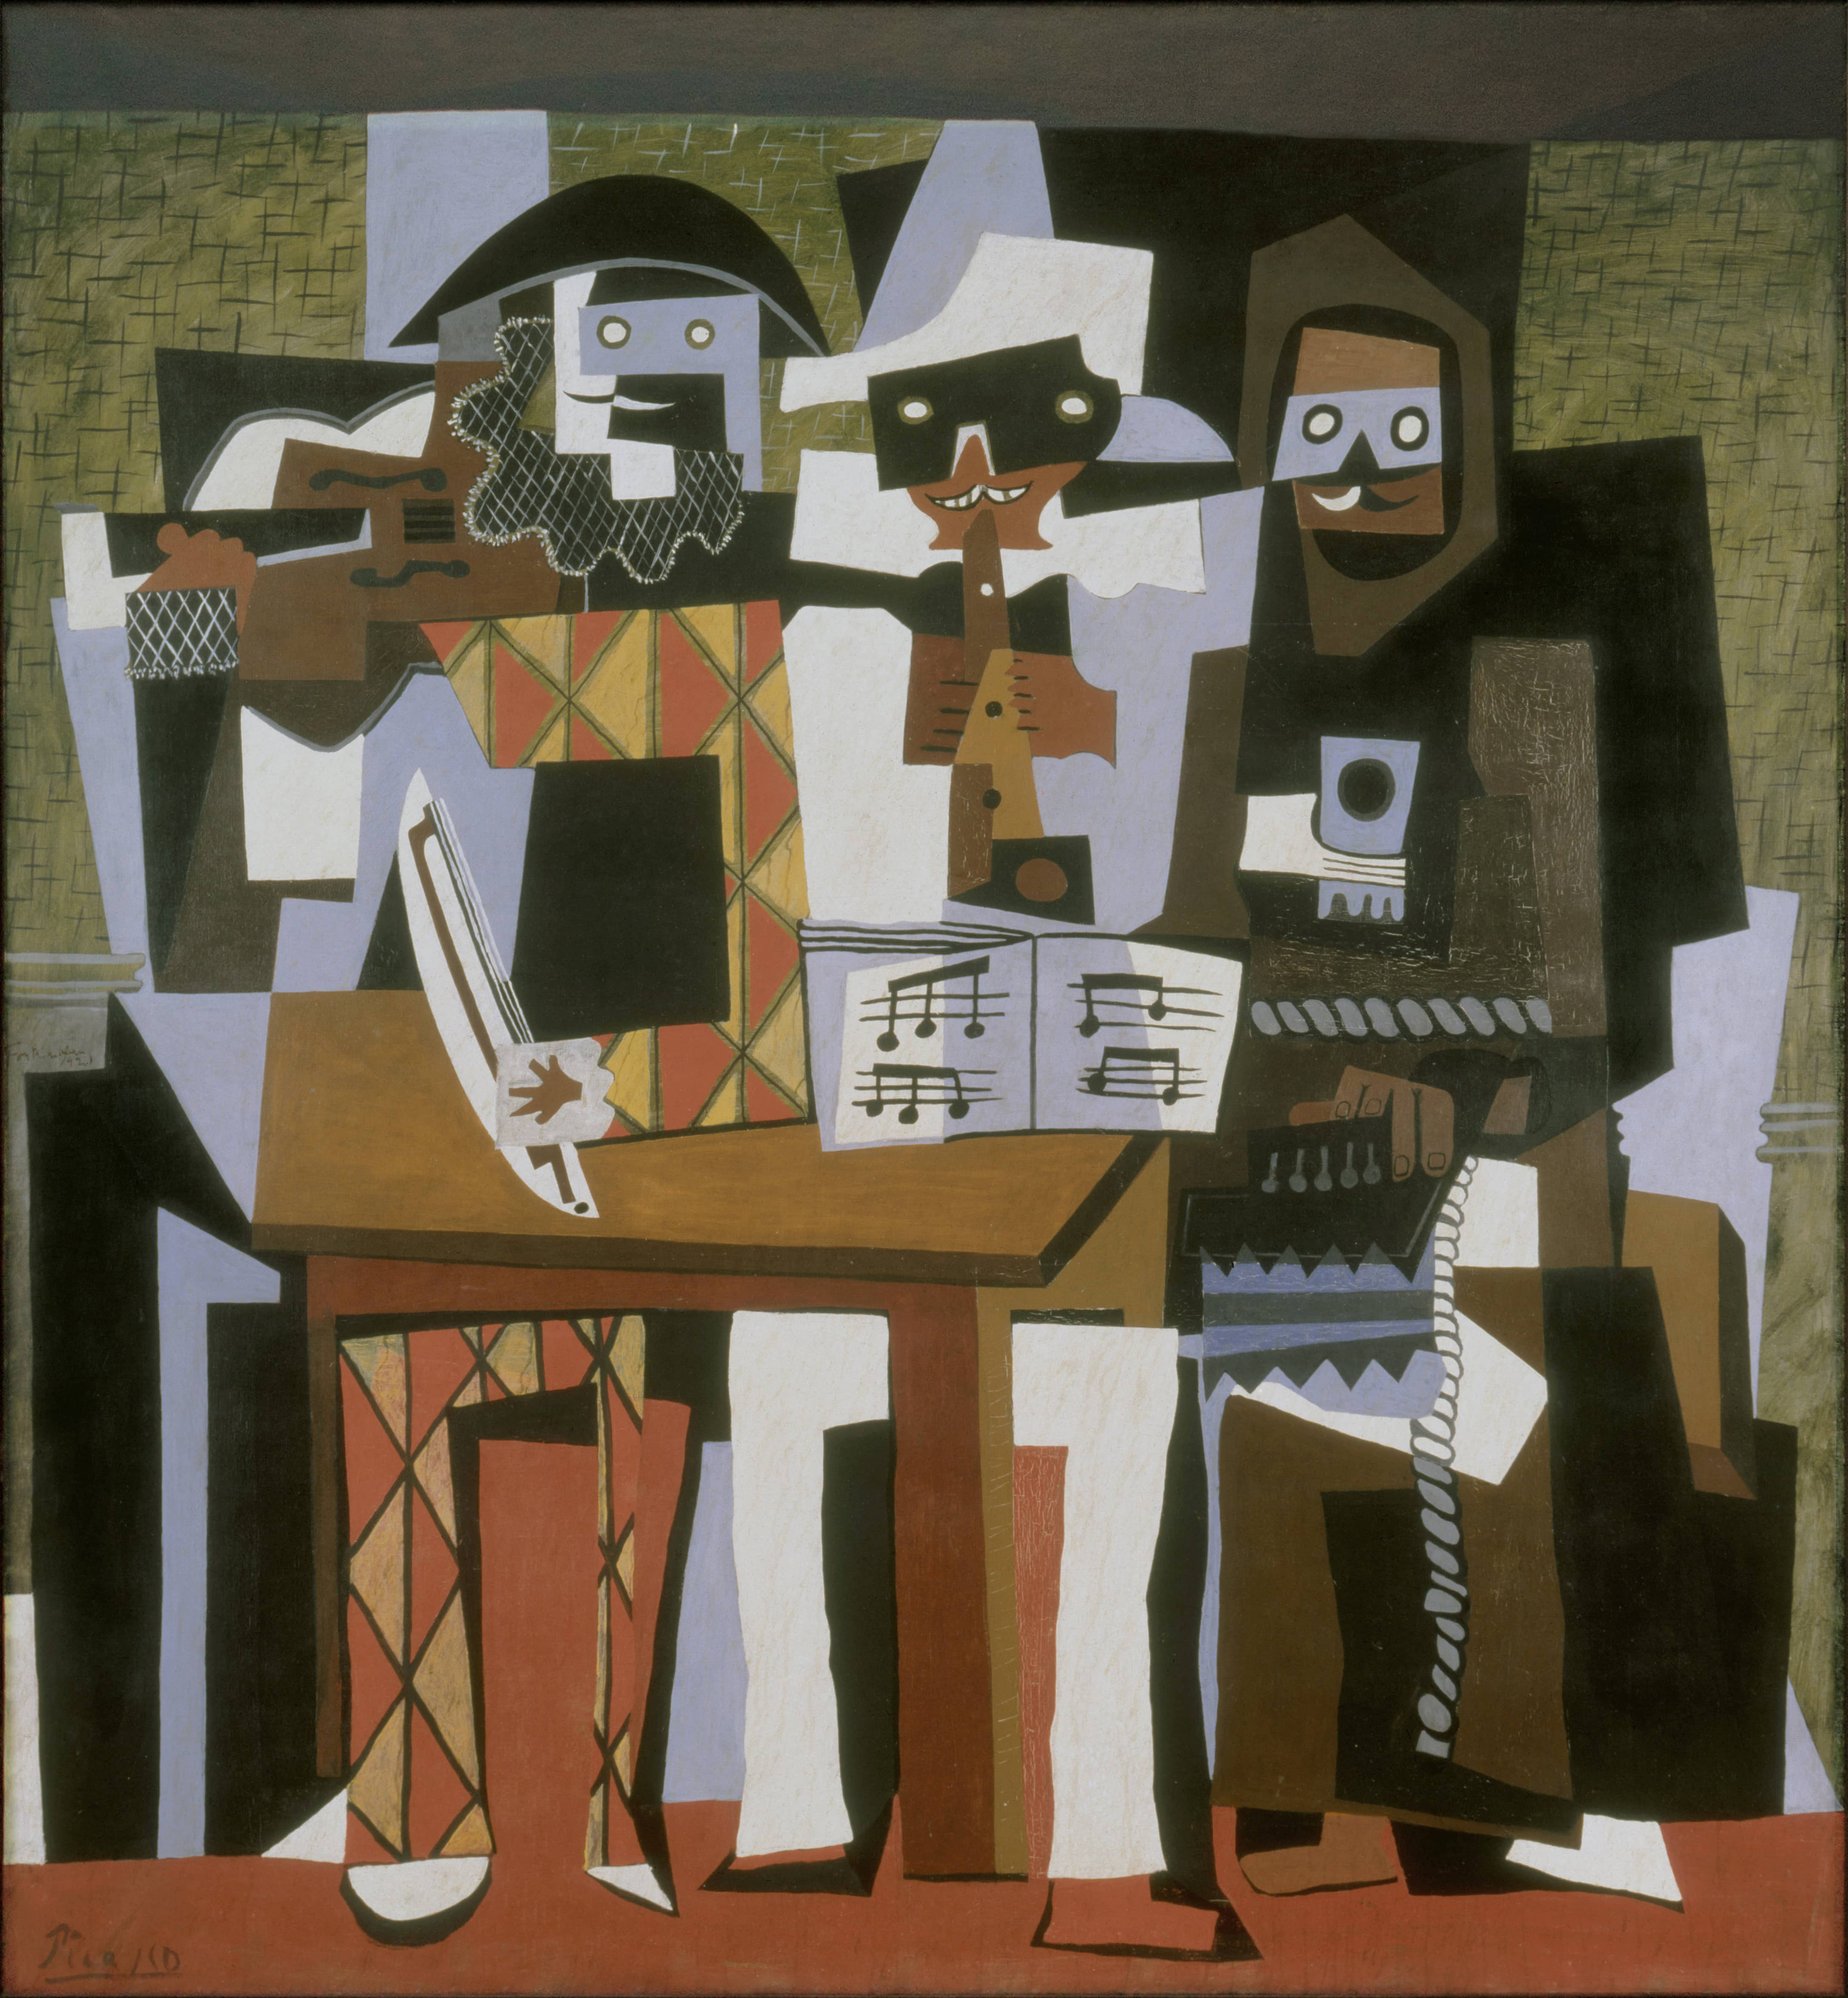 Pablo Picasso, 1921, Nous Autres Musiciens (Three Musicians), oil on canvas, 204.5 x 188.3 cm, Philadelphia Museum of Art.